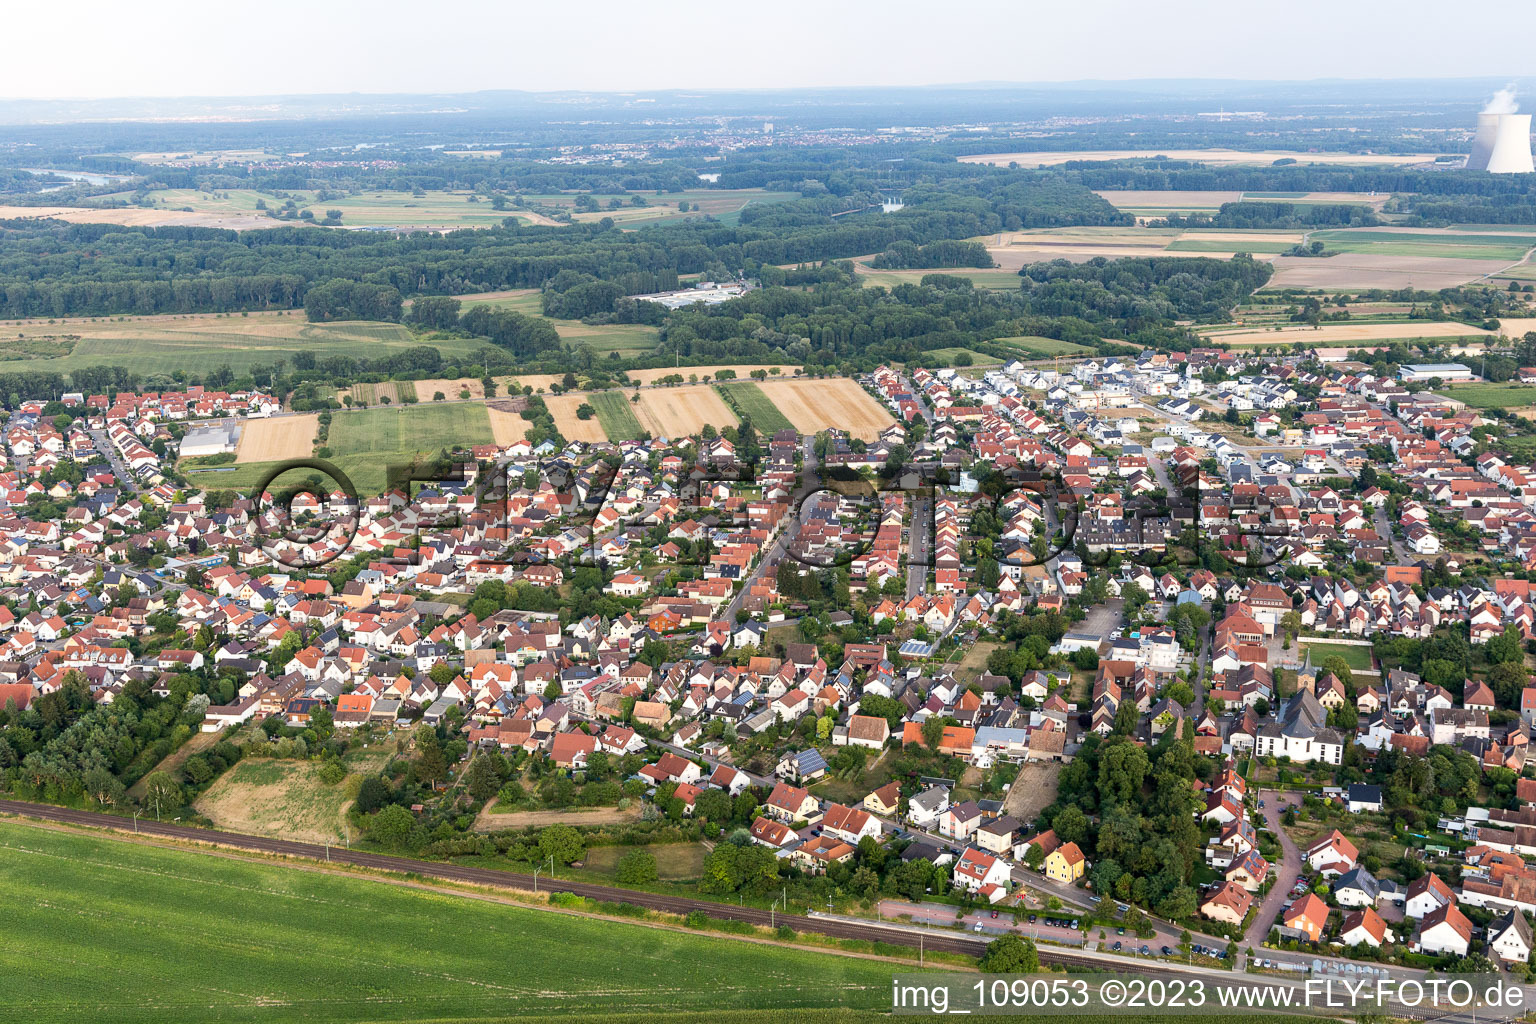 Bird's eye view of District Heiligenstein in Römerberg in the state Rhineland-Palatinate, Germany